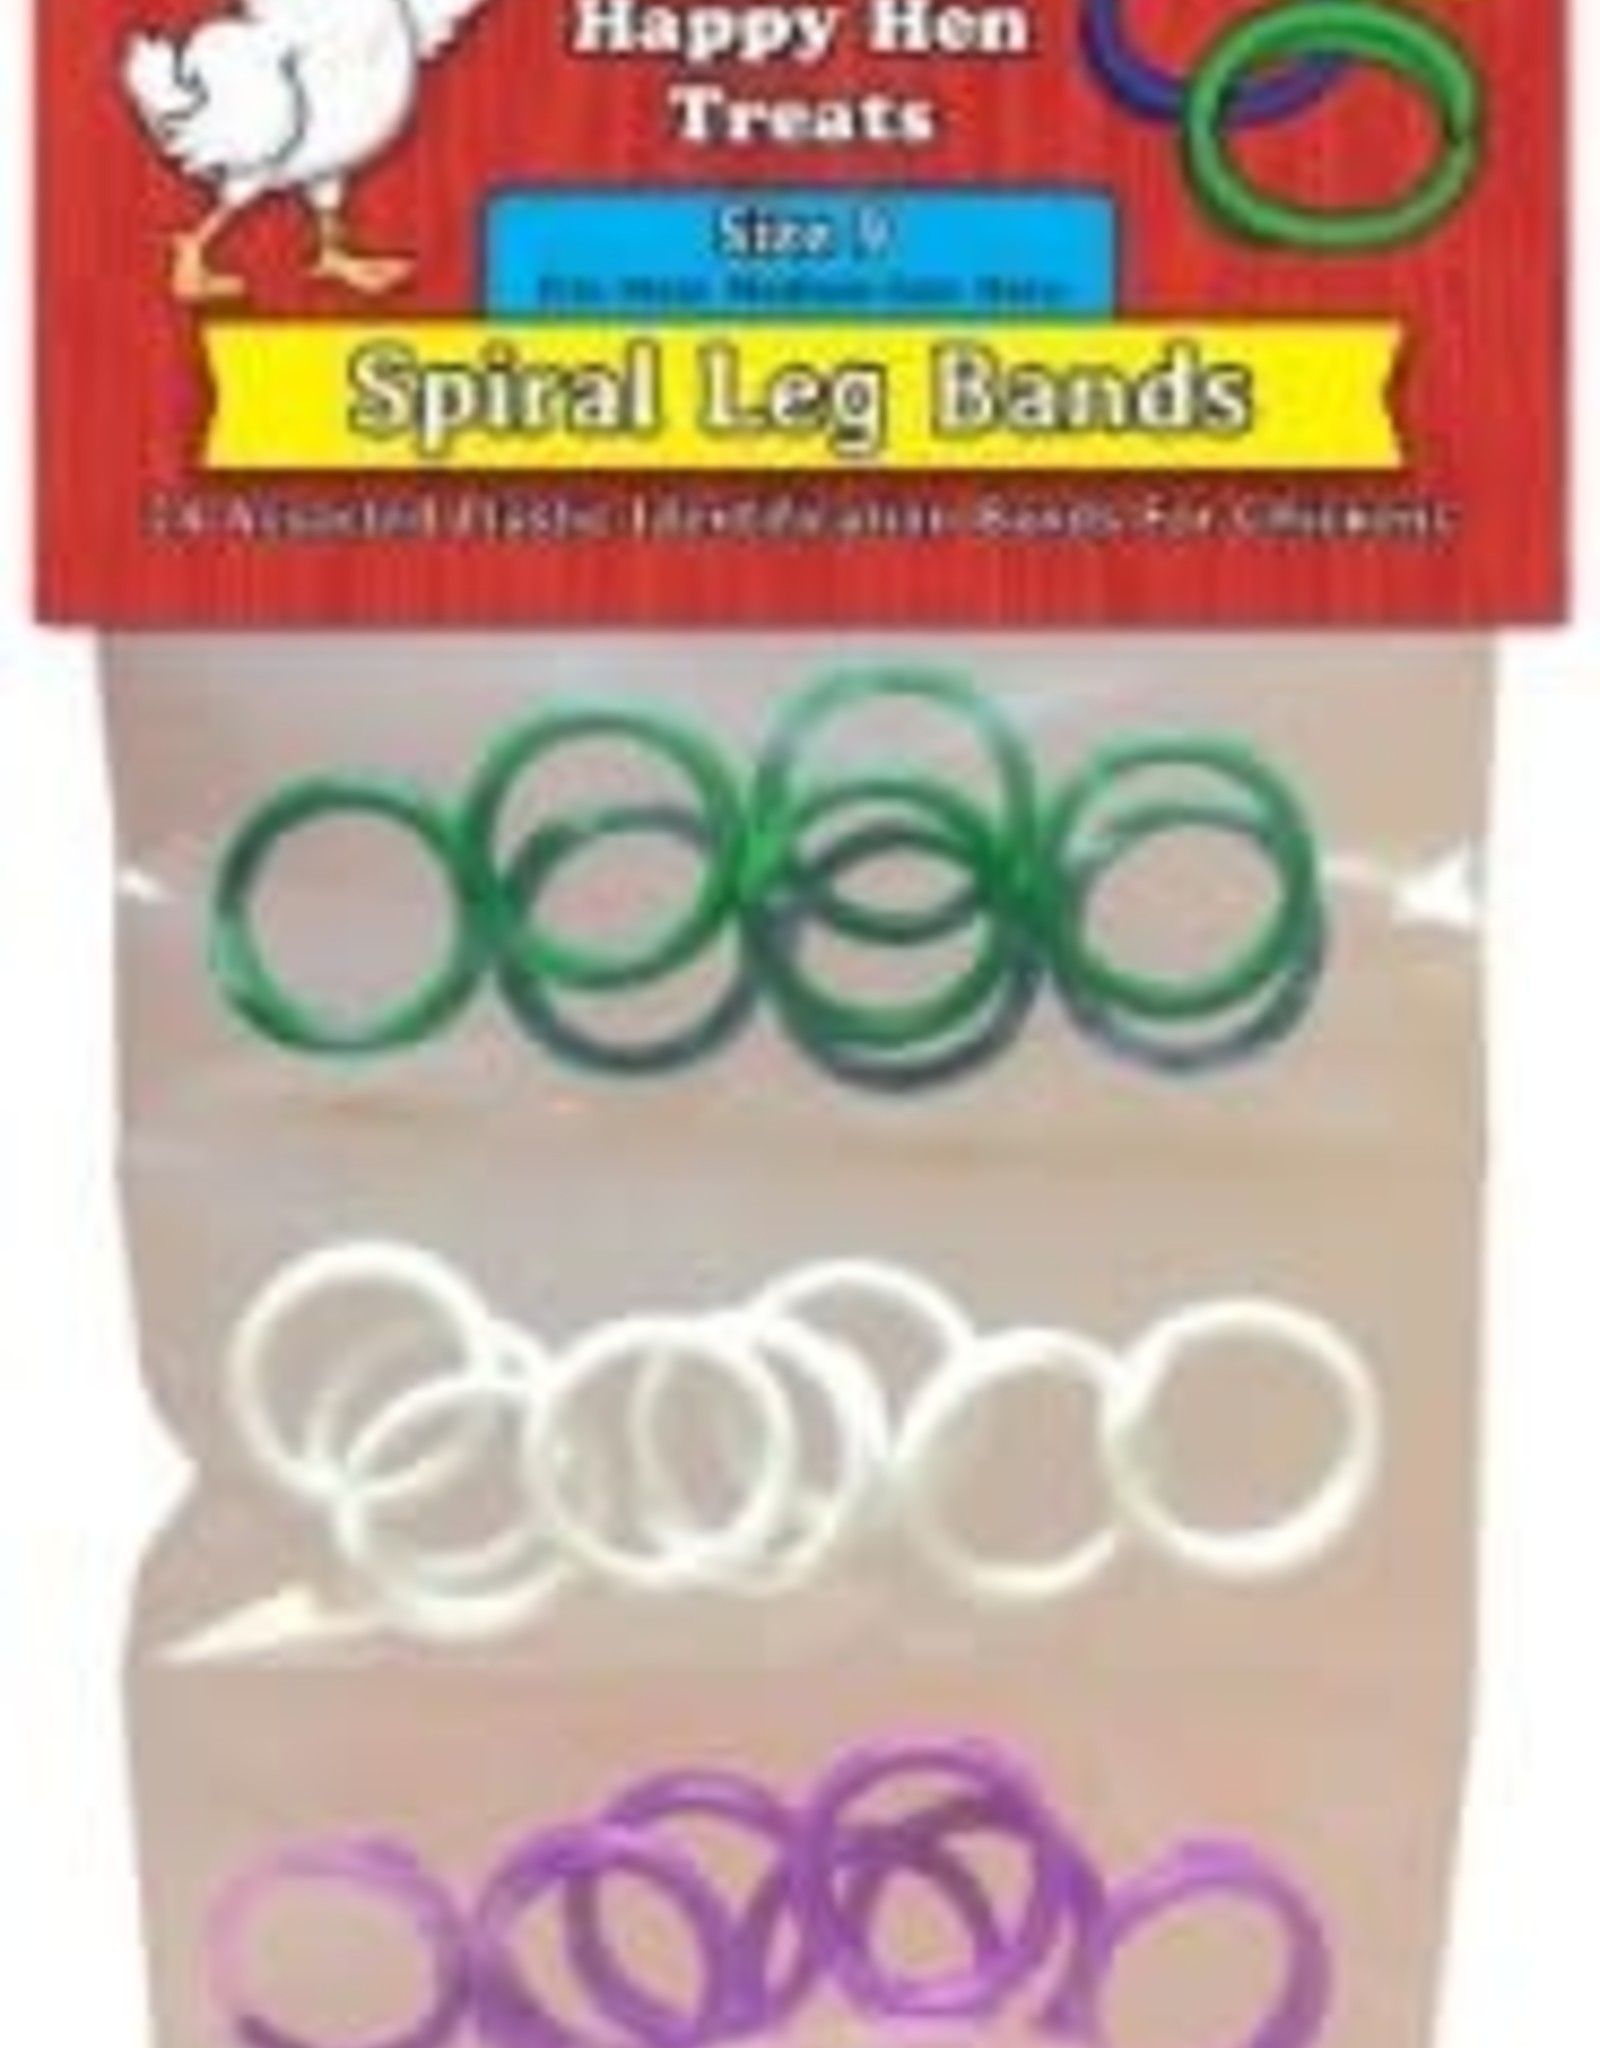 Spiral Leg Band Size 9 24/Bag 3PK